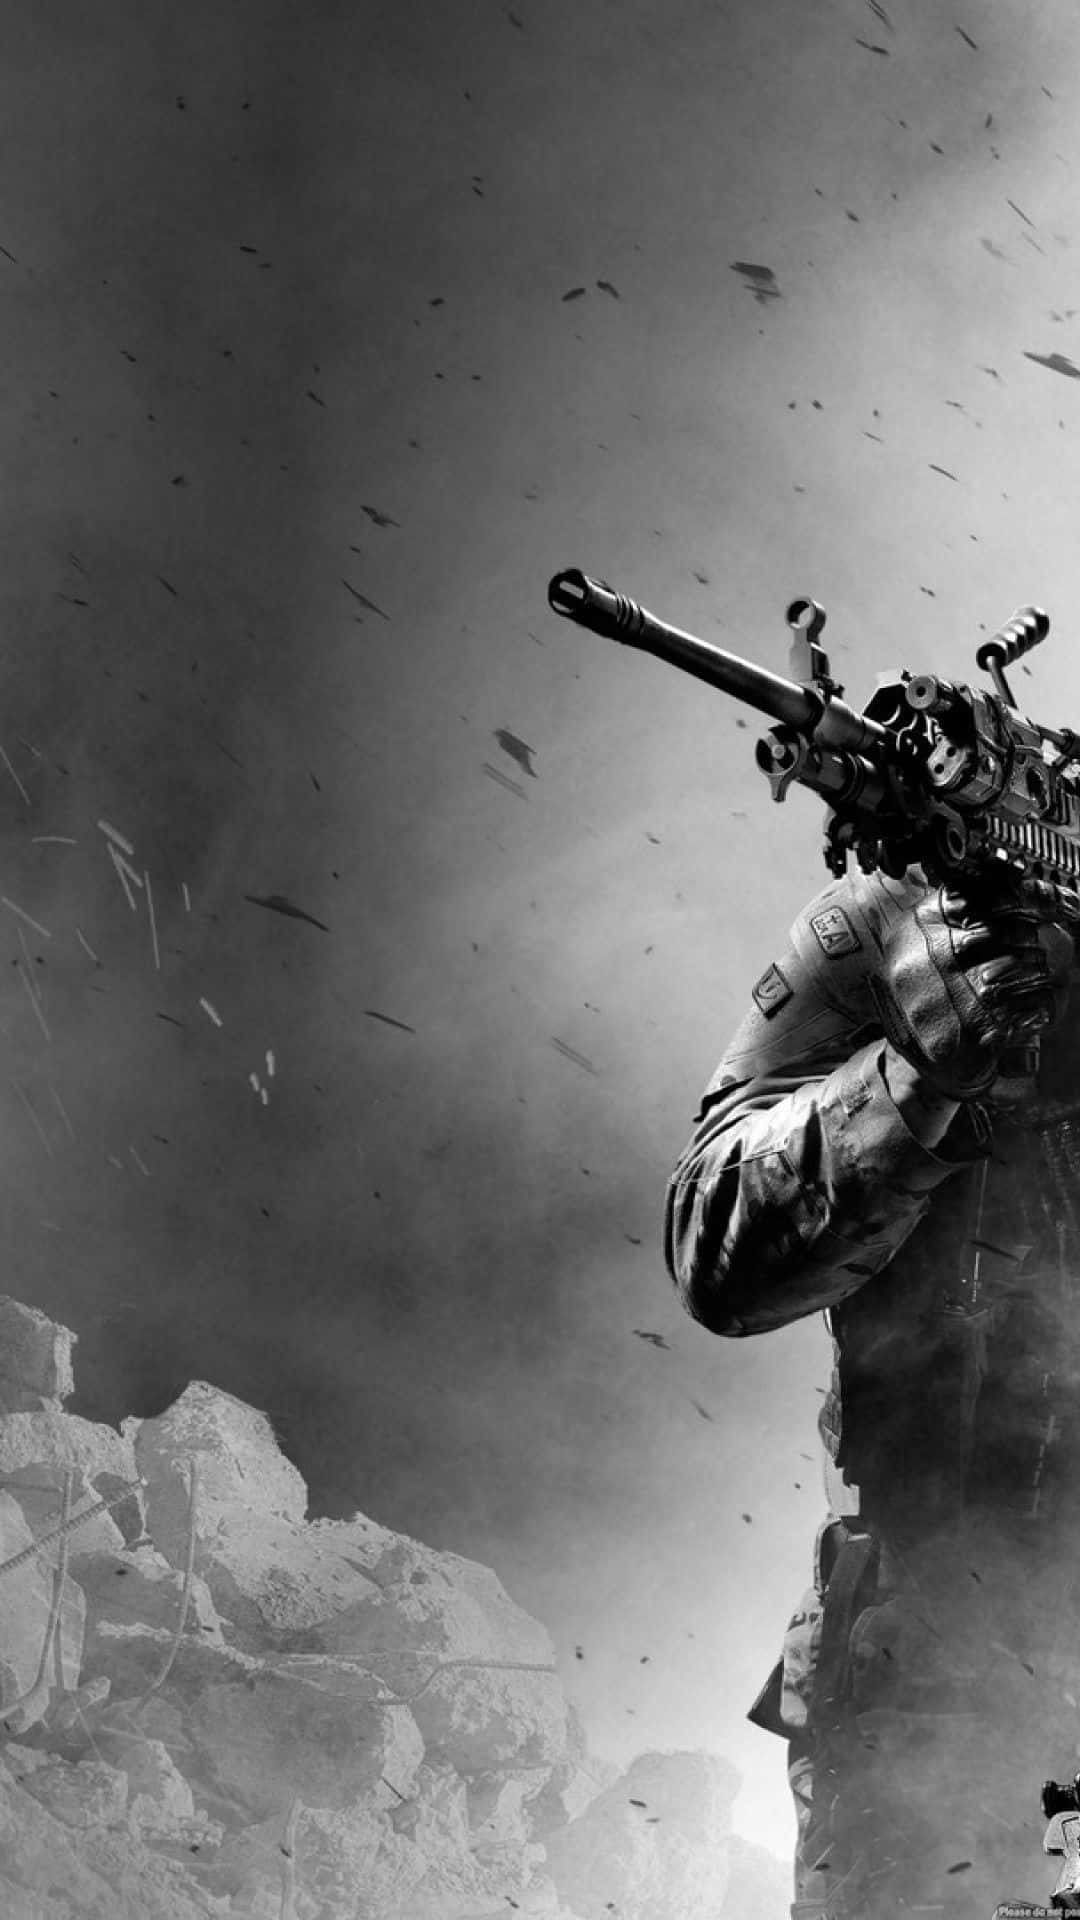 Förbereddig För Action På Språng Med Call Of Duty Mobile!